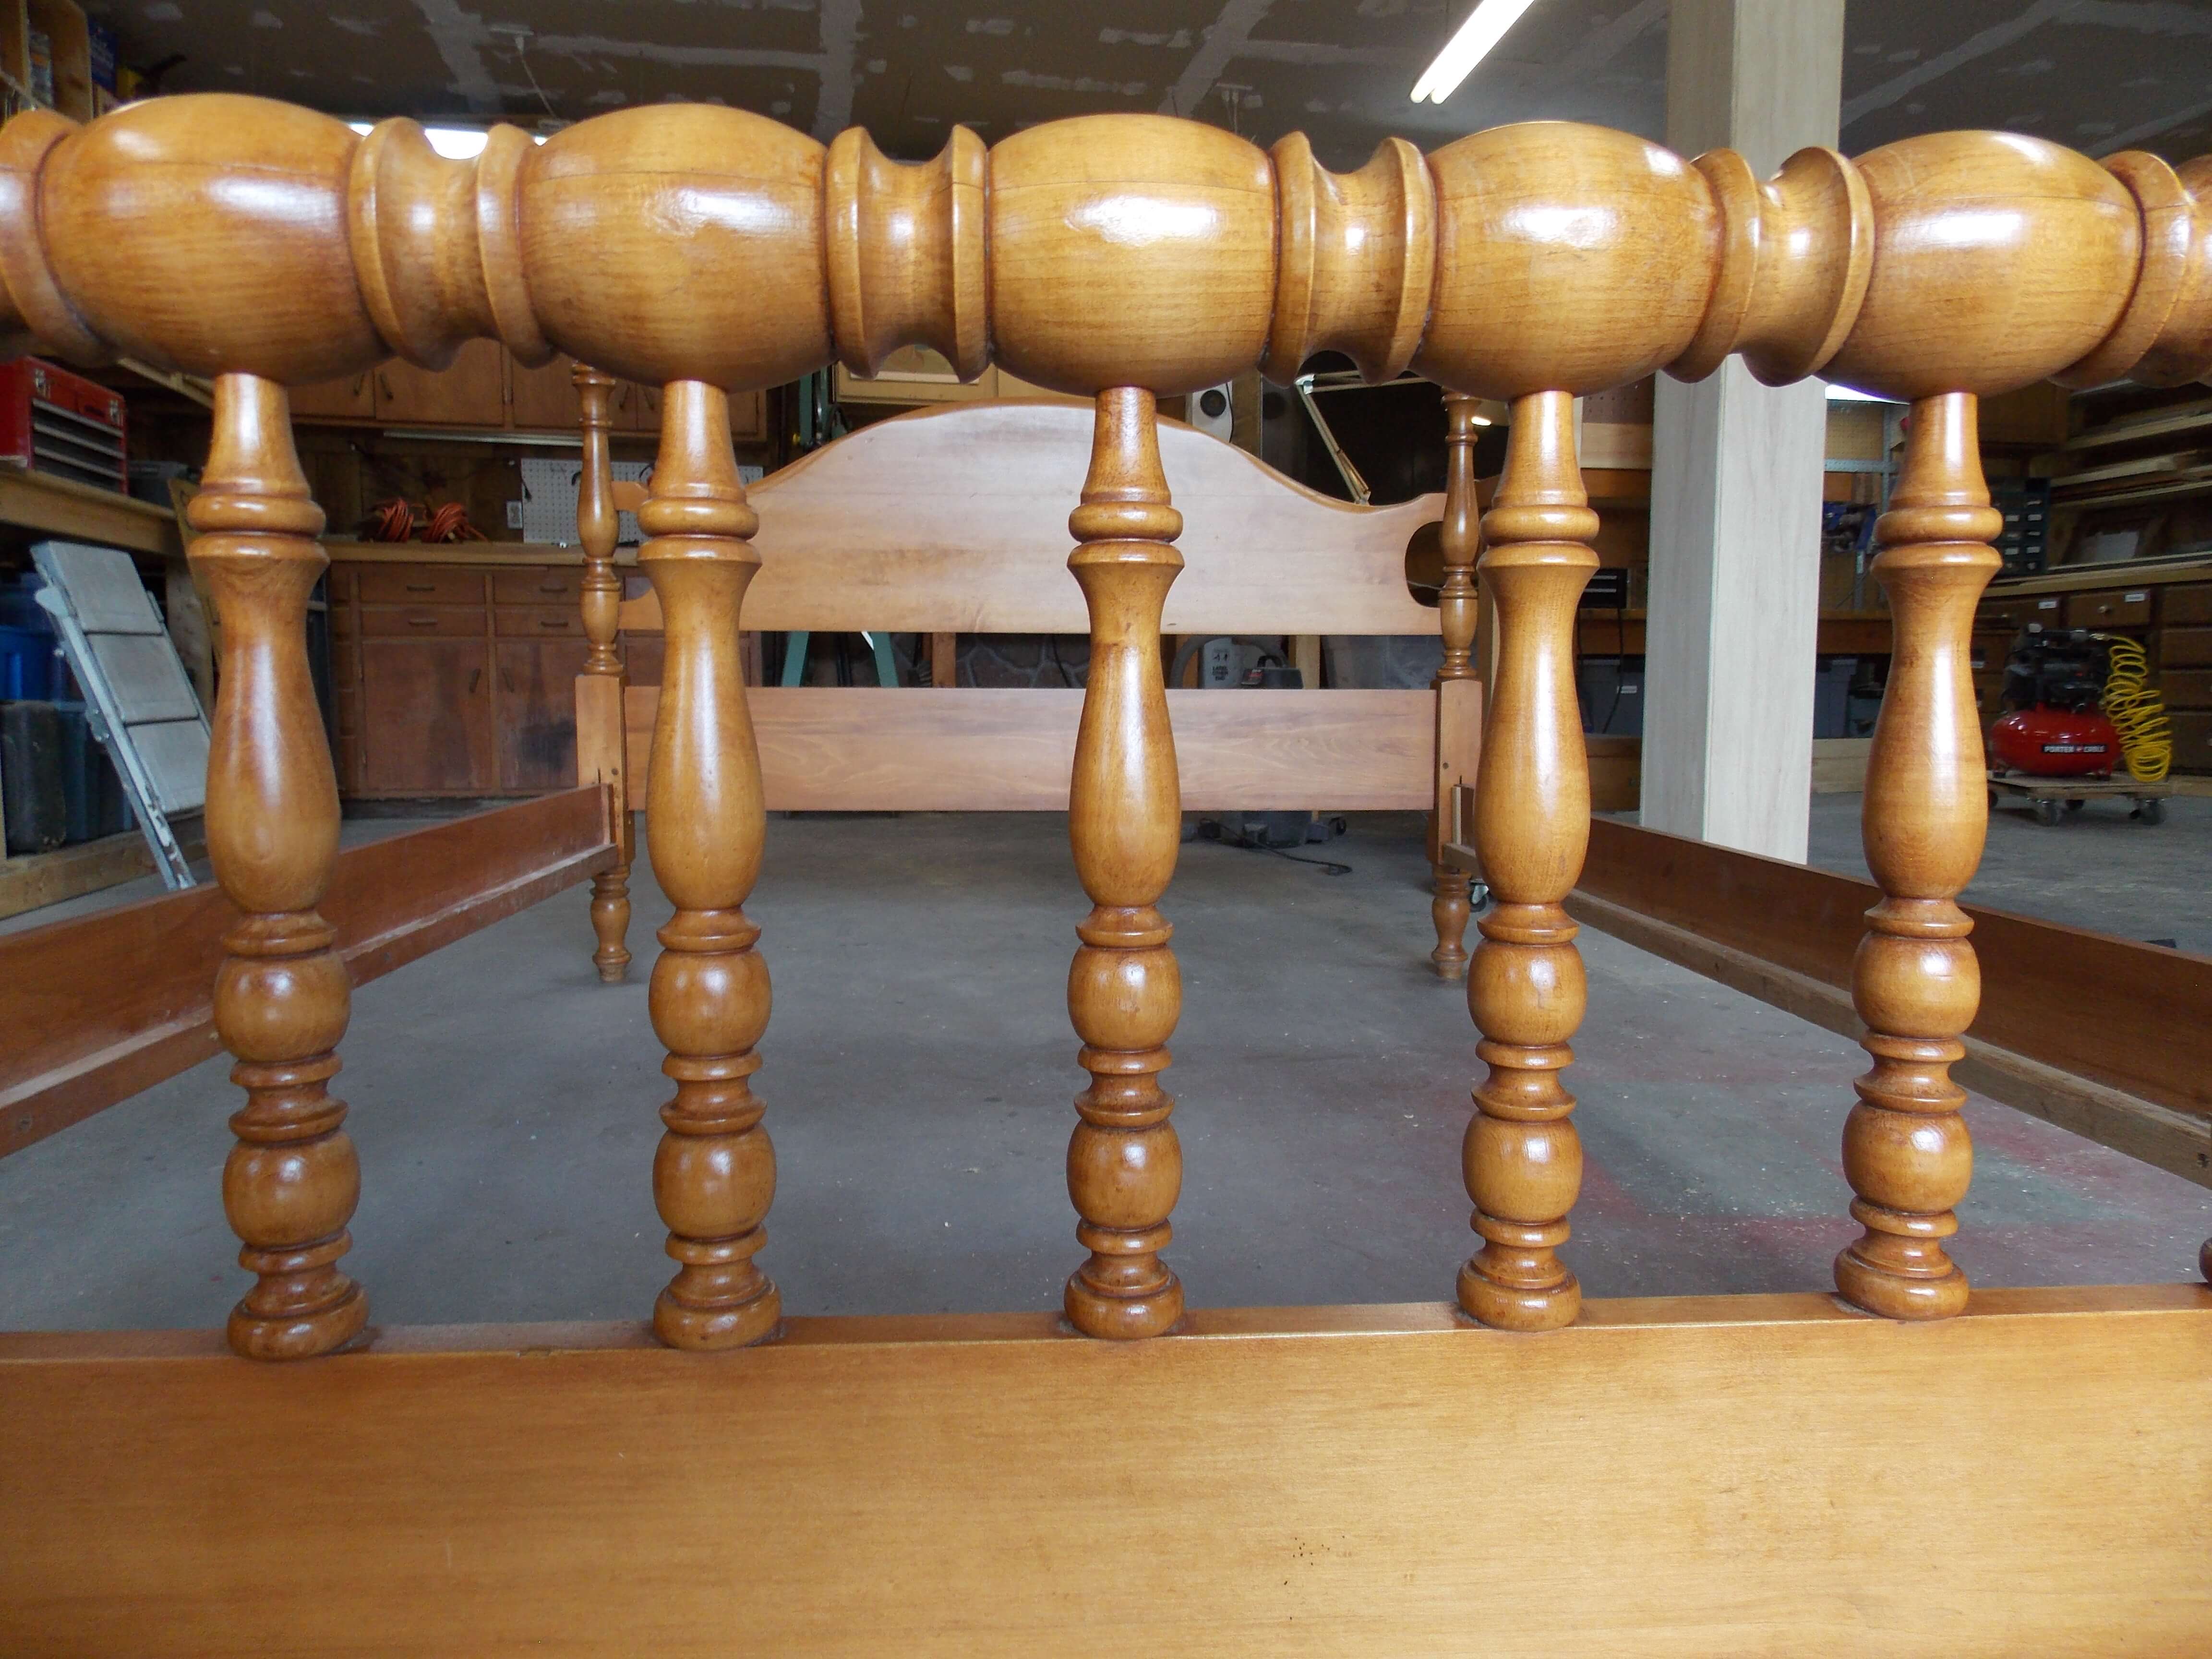 Final refurbished wood bedframe